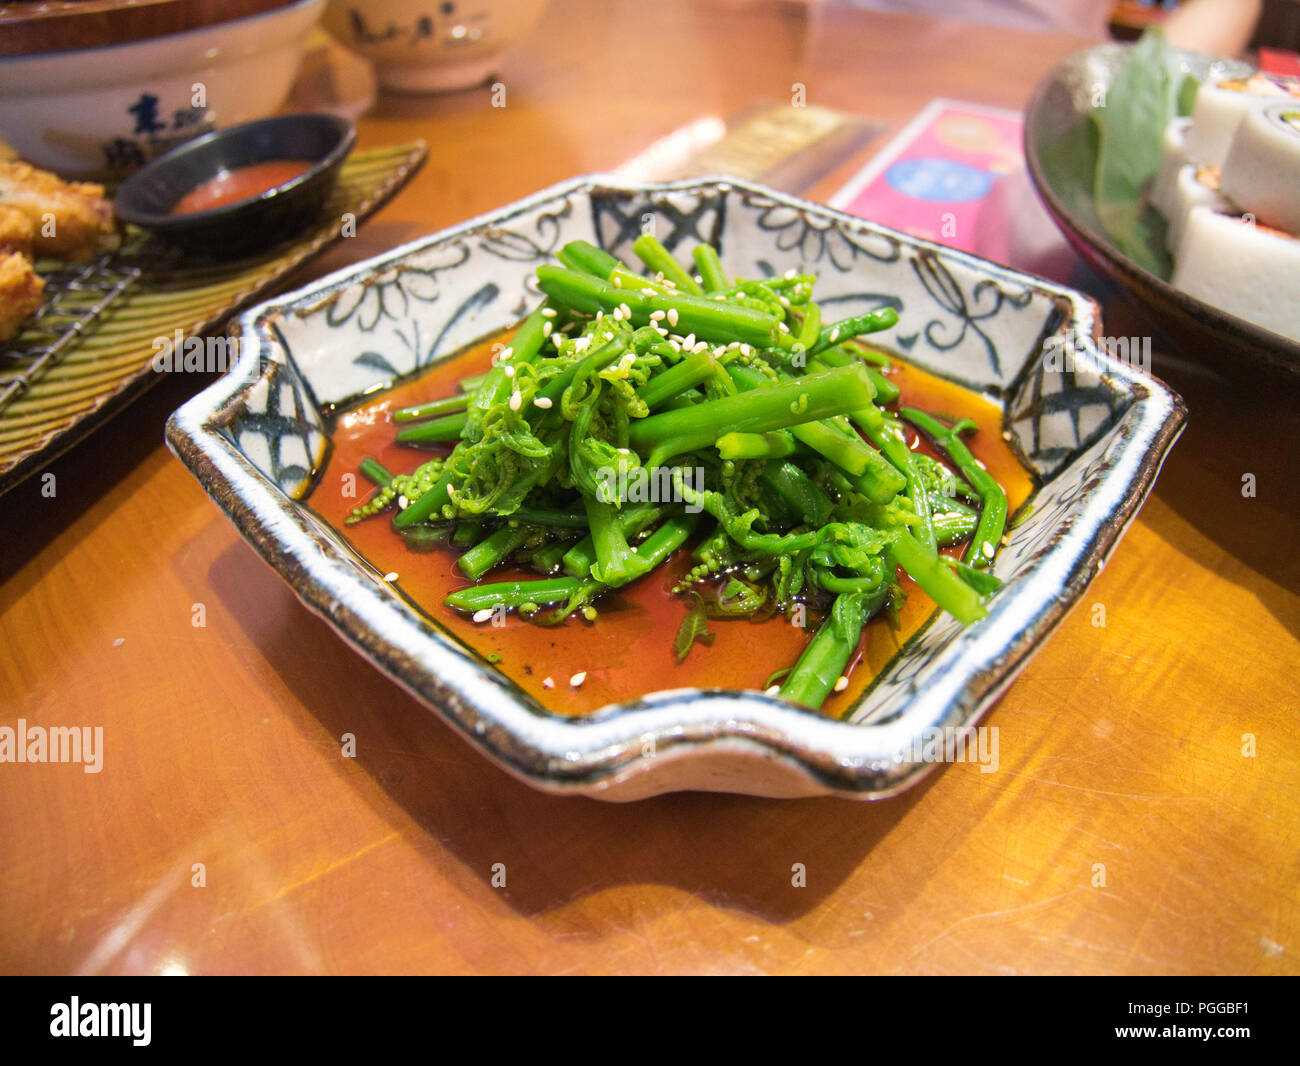 Plaque de cuisson style taïwanais fougère, légumes avec sauce rouge et d'autres plats à l'arrière-plan Banque D'Images